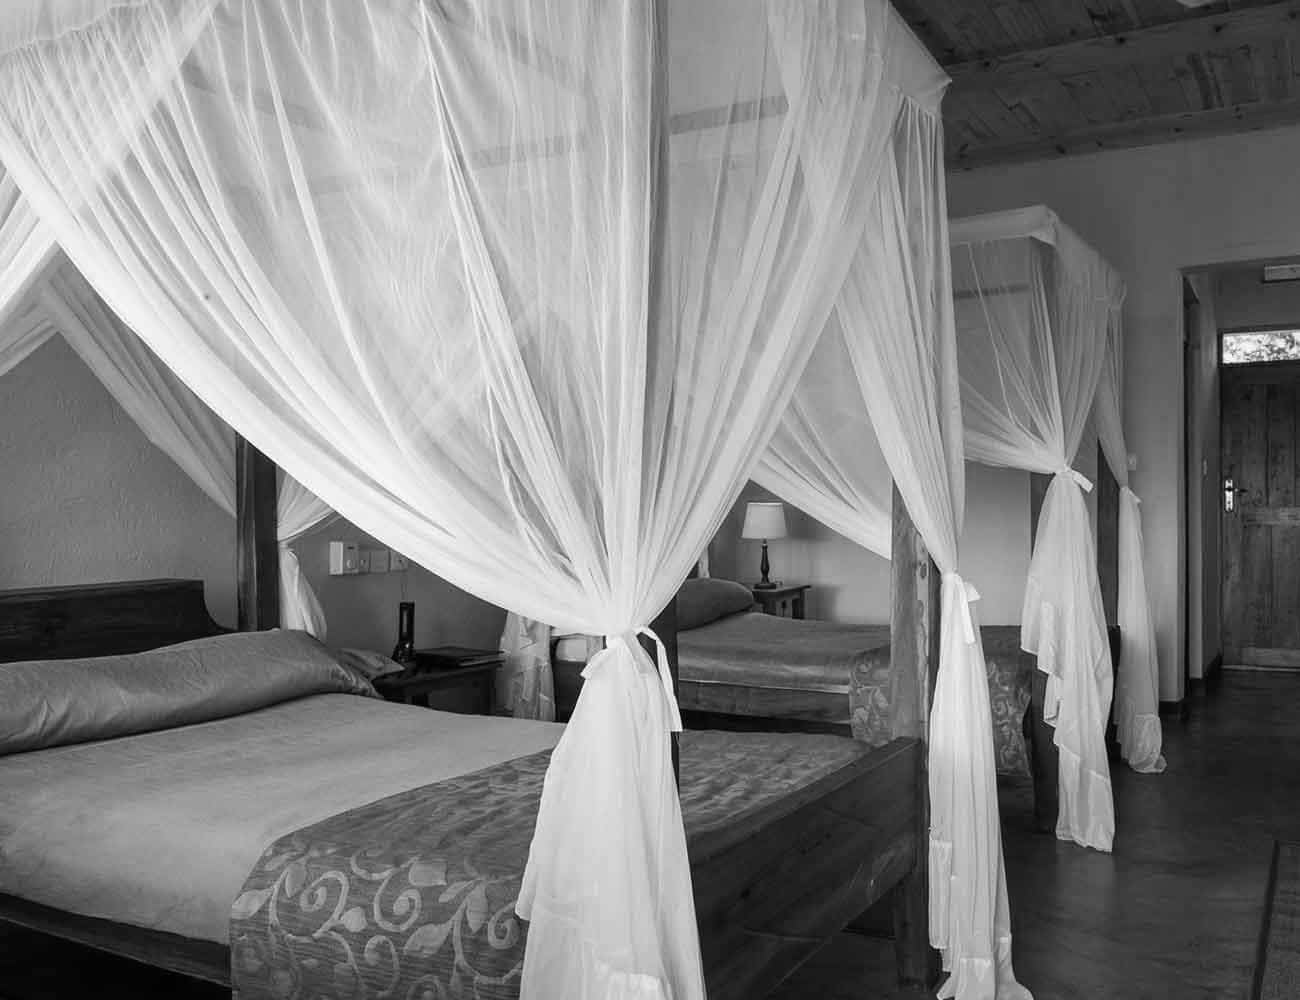 Bedrooms at Tloma Lodge Ngorongoro